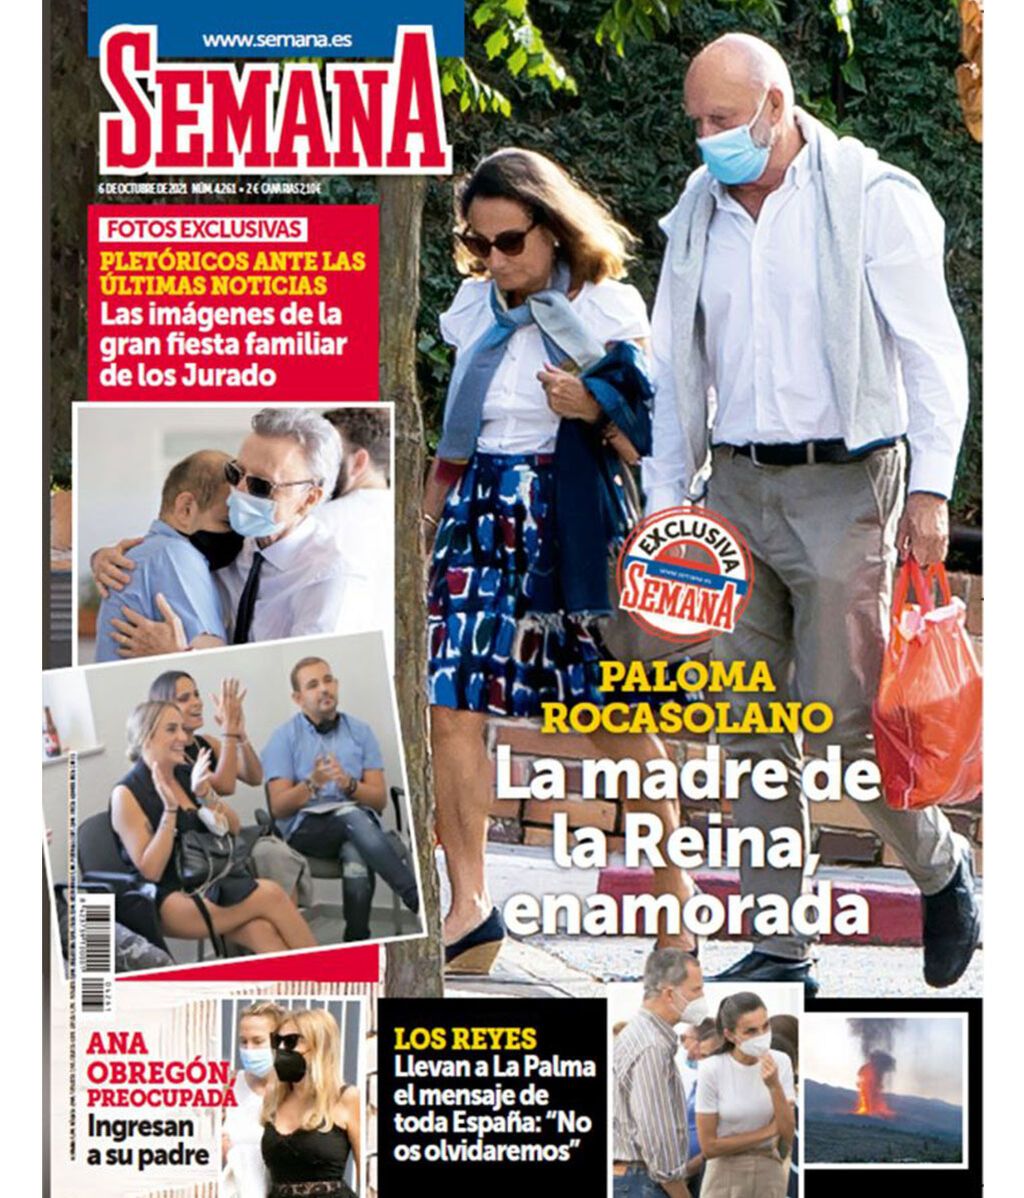 Paloma Rocasolano tiene nuevo novio, según la revista Semana